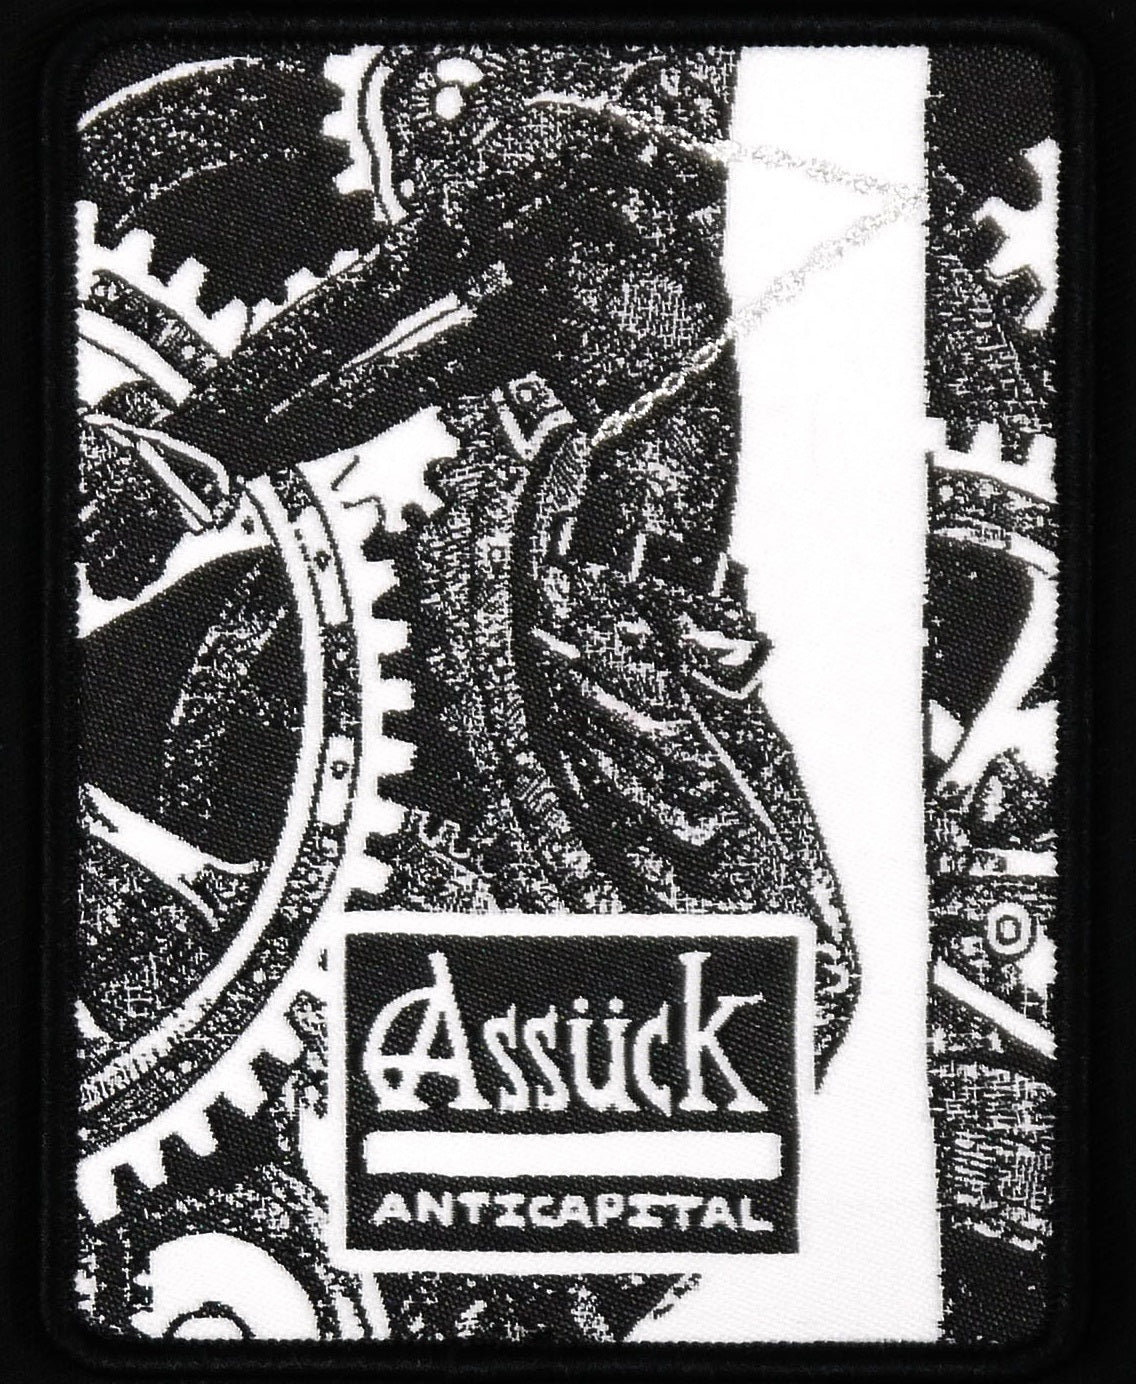 ASSUCK - Anticapital Woven Patch